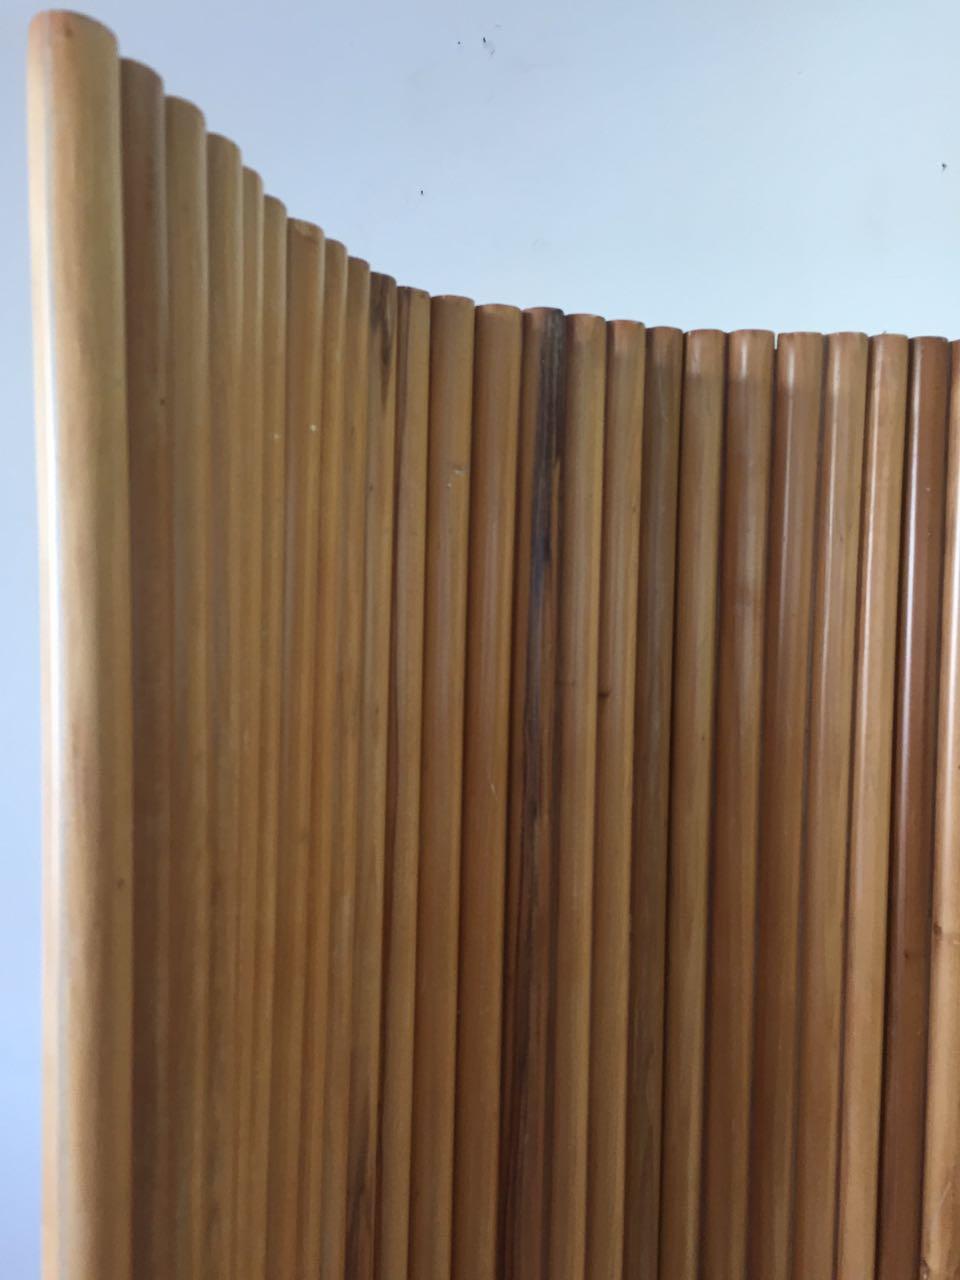 Brazilian Joaquim Tenreiro Folding Screen in Wood, Brazil